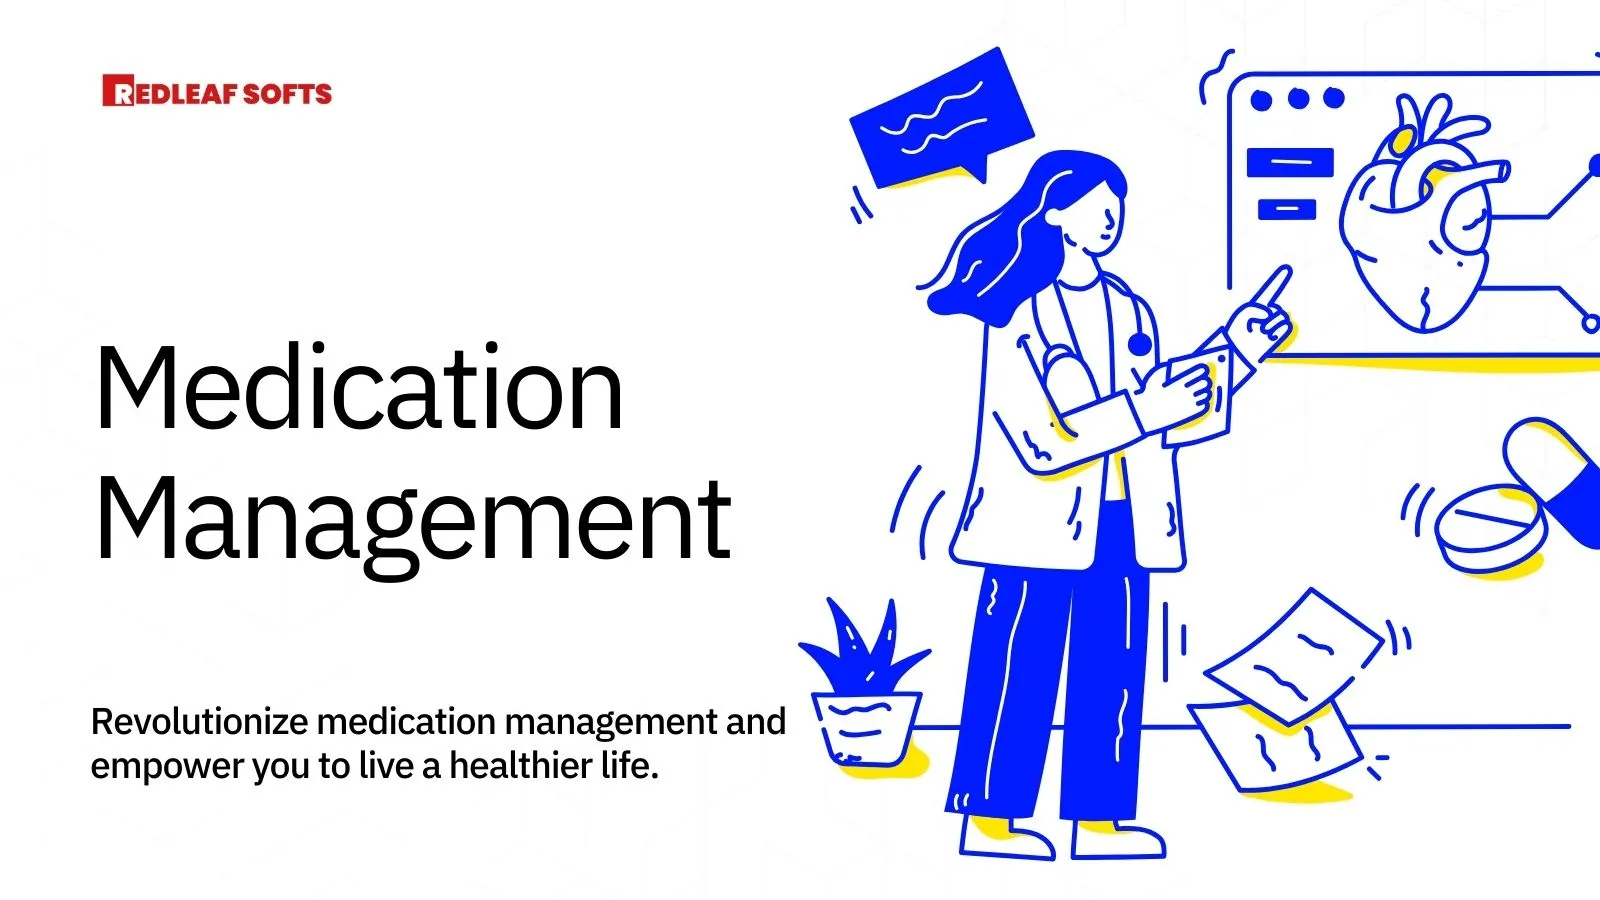 Medication Management : A mobile app prescription